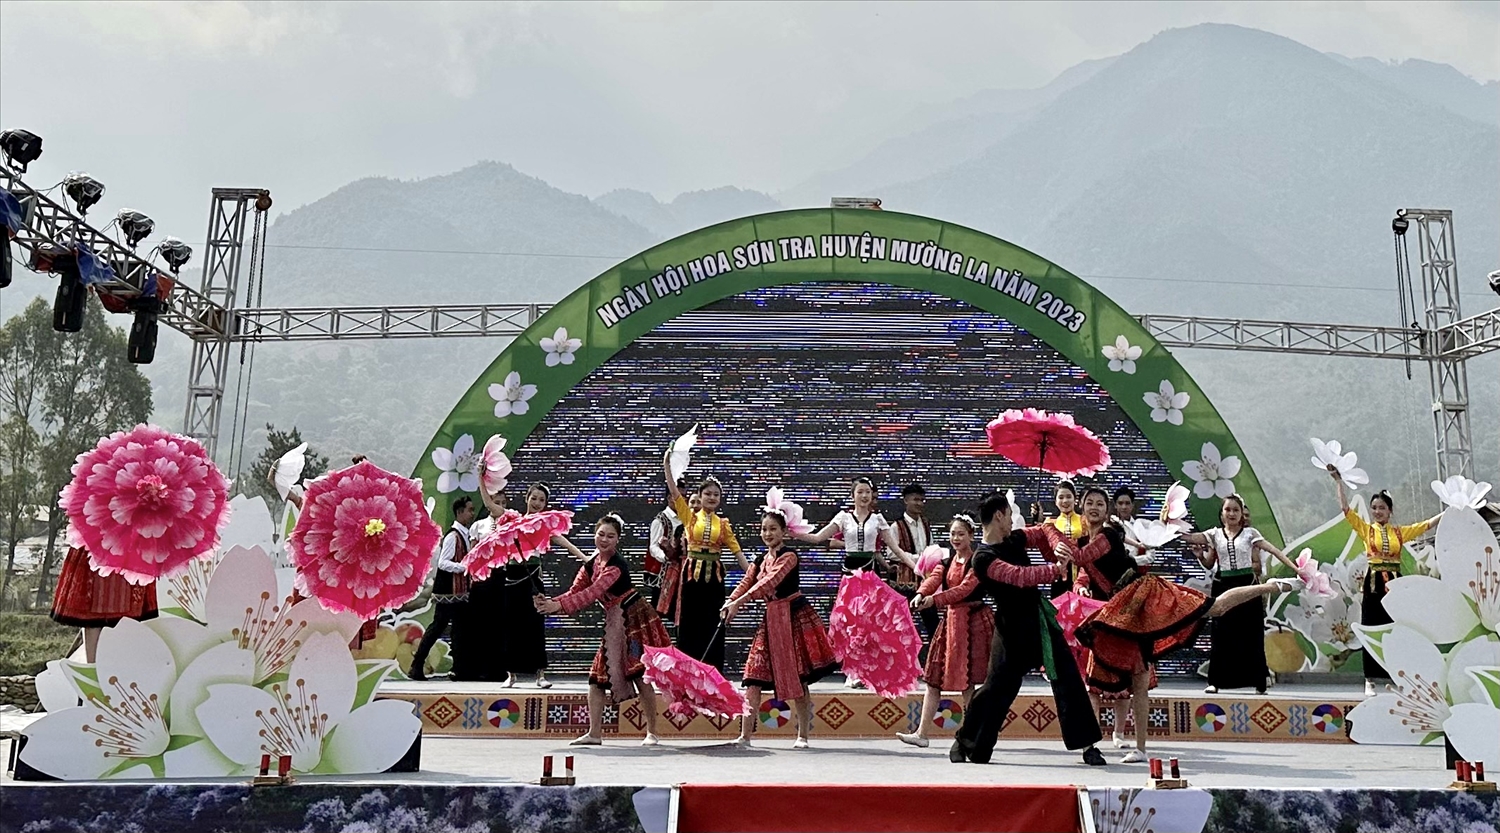 Chương trình nghệ thuật đặc sắc “Tiếng gọi mùa hoa Sơn Tra” được dàn dựng công phu, mang đậm bản sắc văn hóa dân tộc